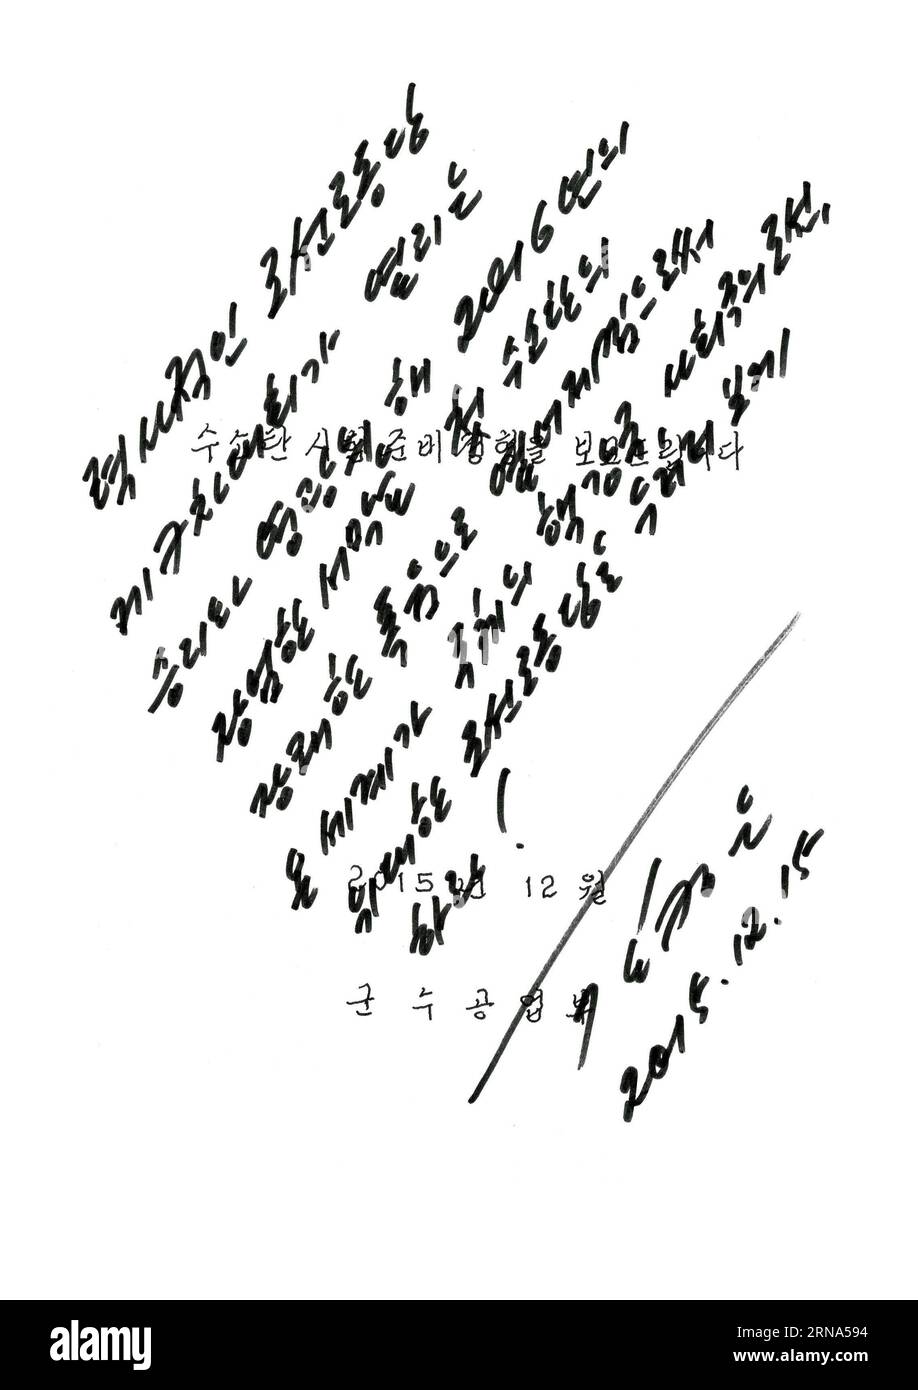 Kim Jong-un unterzeichnen Befehl für Test einer Wasserstoffbombe (160107) -- PJÖNGJANG, 7. Januar 2016 -- das Foto der Koreanischen Zentralnachrichtenagentur () vom 7. Januar 2016 zeigt den Auftrag für den Wasserstoffbombentest, der am 15. Dezember 2015 von Kim Jong UN, dem Spitzenführer der Demokratischen Volksrepublik Korea (DVRK), unterzeichnet wurde. Kim Jong UN bestellte den H-Bombentest am 15. Dezember 2015 und unterschrieb den letzten schriftlichen Auftrag am Sonntag. DPRK-WASSERSTOFFBOMBENTEST-KIM JONG UN-AUFTRAG UNTERZEICHNET KCNA PUBLICATIONxNOTxINxCHN Kim Jong UN unterzeichnete das Kommando für den Versuch einer Wasserstoffbombe 160107 Pyongyang 7. Januar 2016 Foto von der K Stockfoto